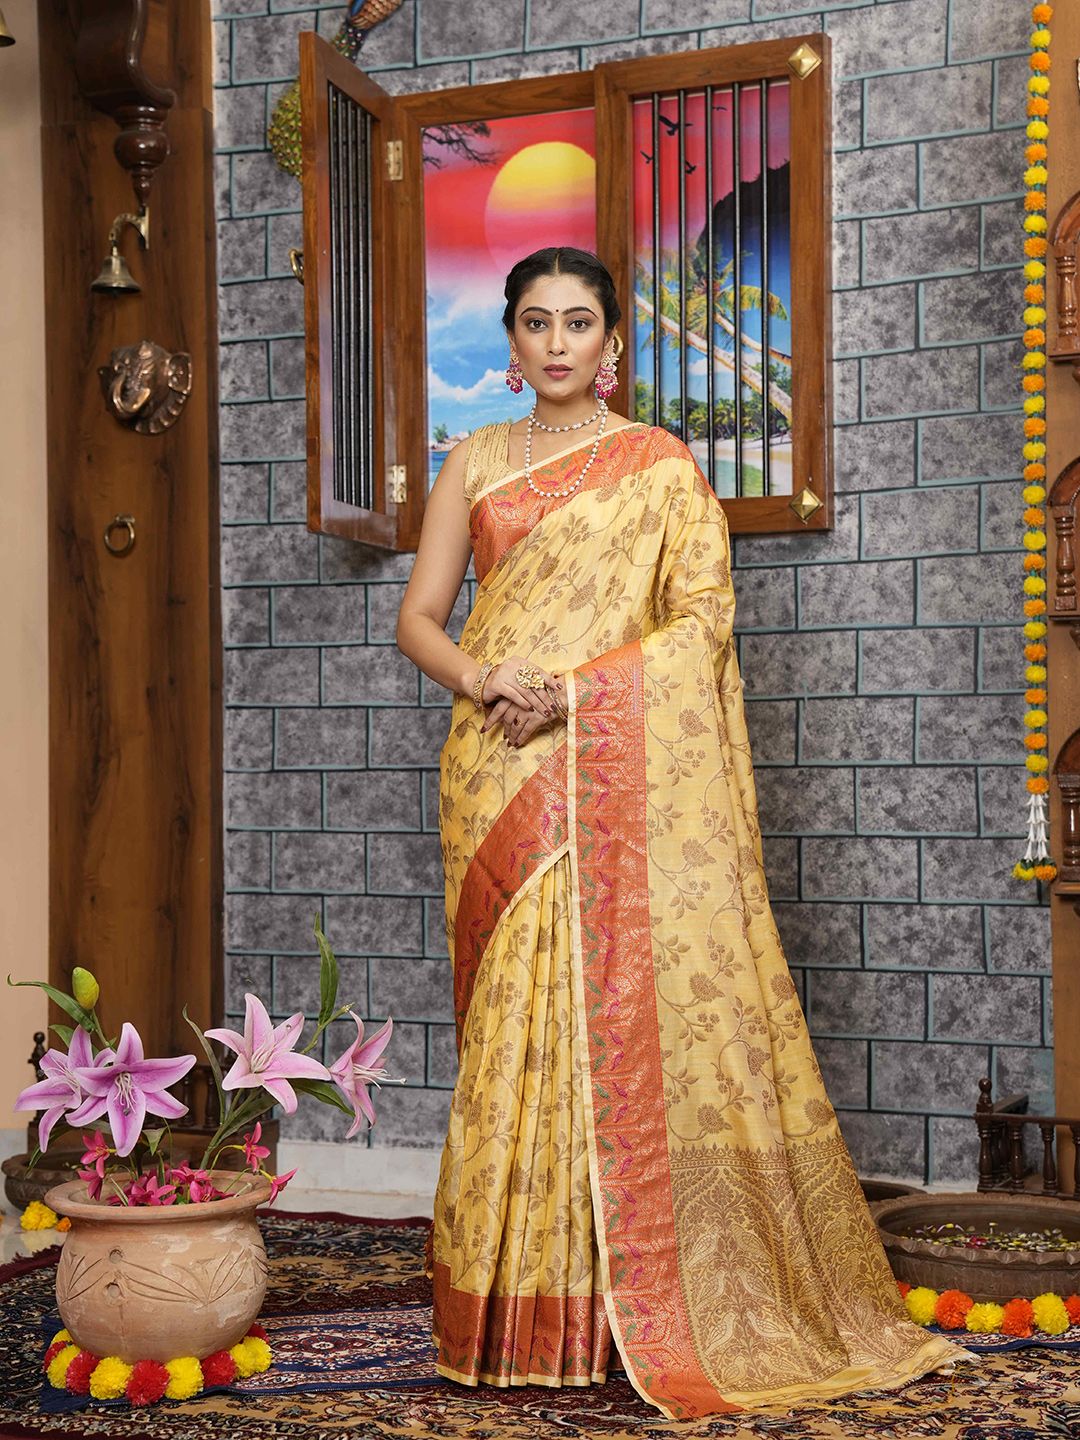 elora Floral Woven Design Bhagalpuri Saree Price in India